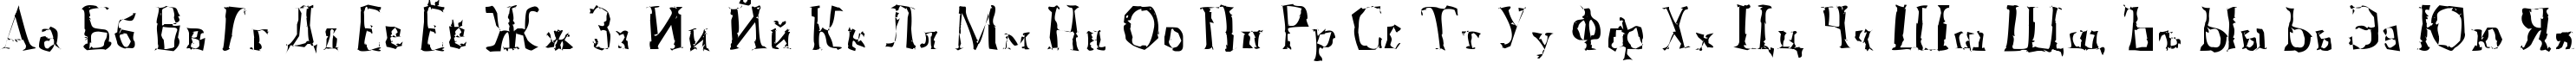 Пример написания русского алфавита шрифтом A Font with Serifs. Disordered